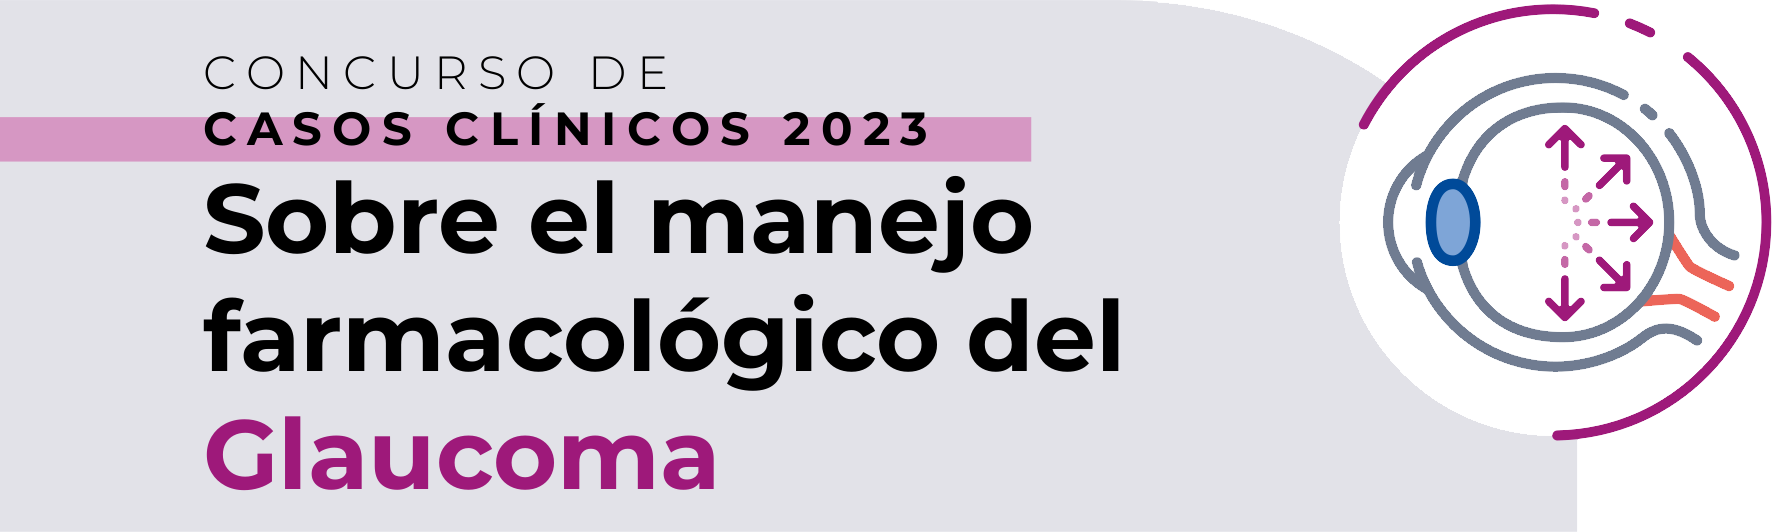 CONCURSO DE CASOS CLÍNICOS 2023. Sobre el manejo farmacológico del Glaucoma.